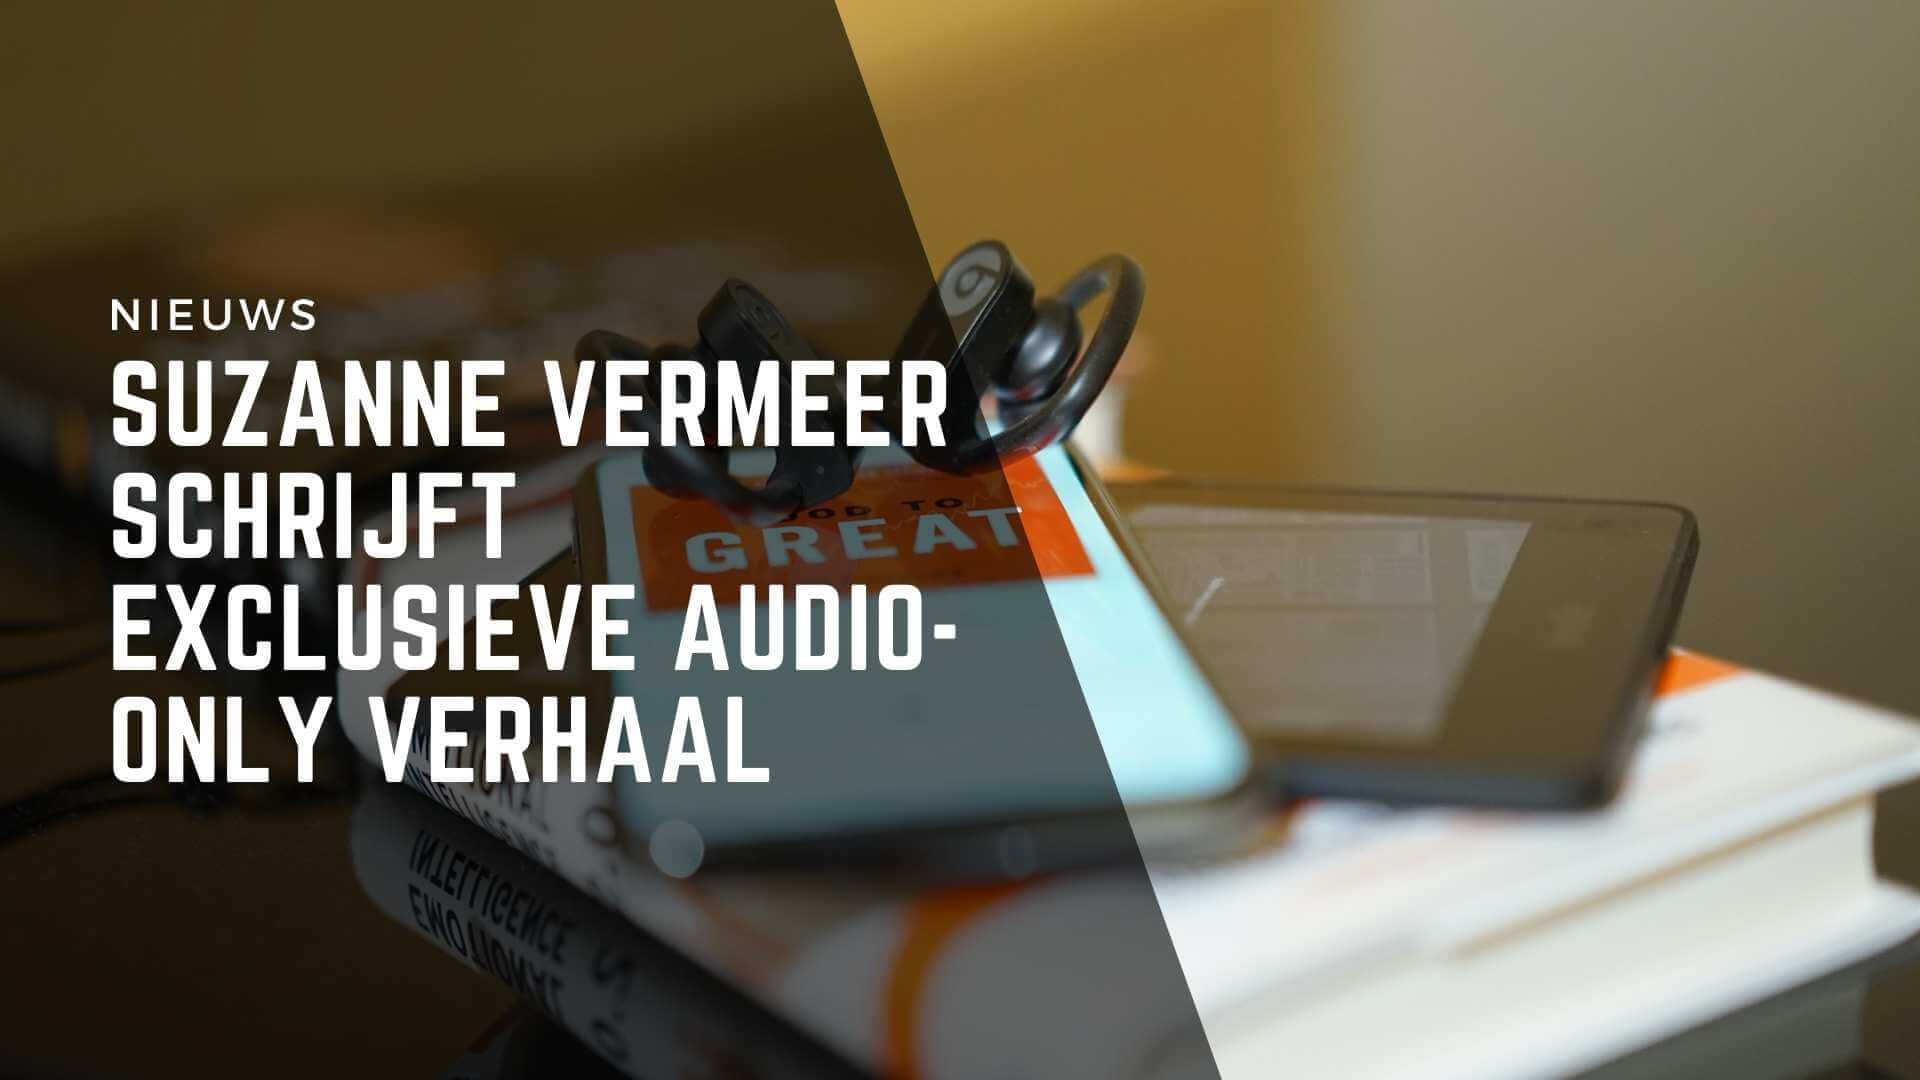 Suzanne Vermeer schrijft exclusieve audio-only verhaal